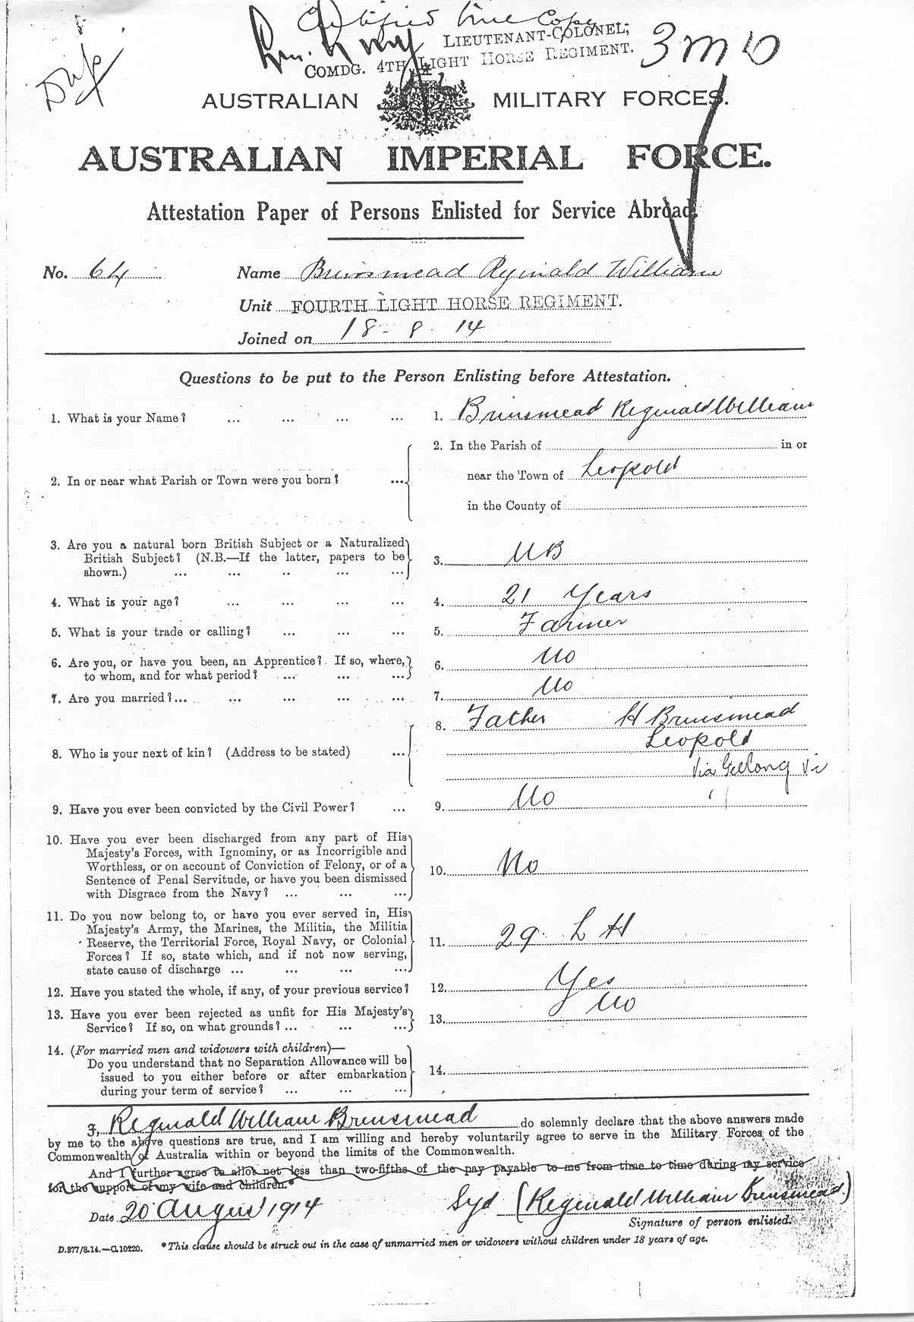 REg Brinsmead's Enlistment Record